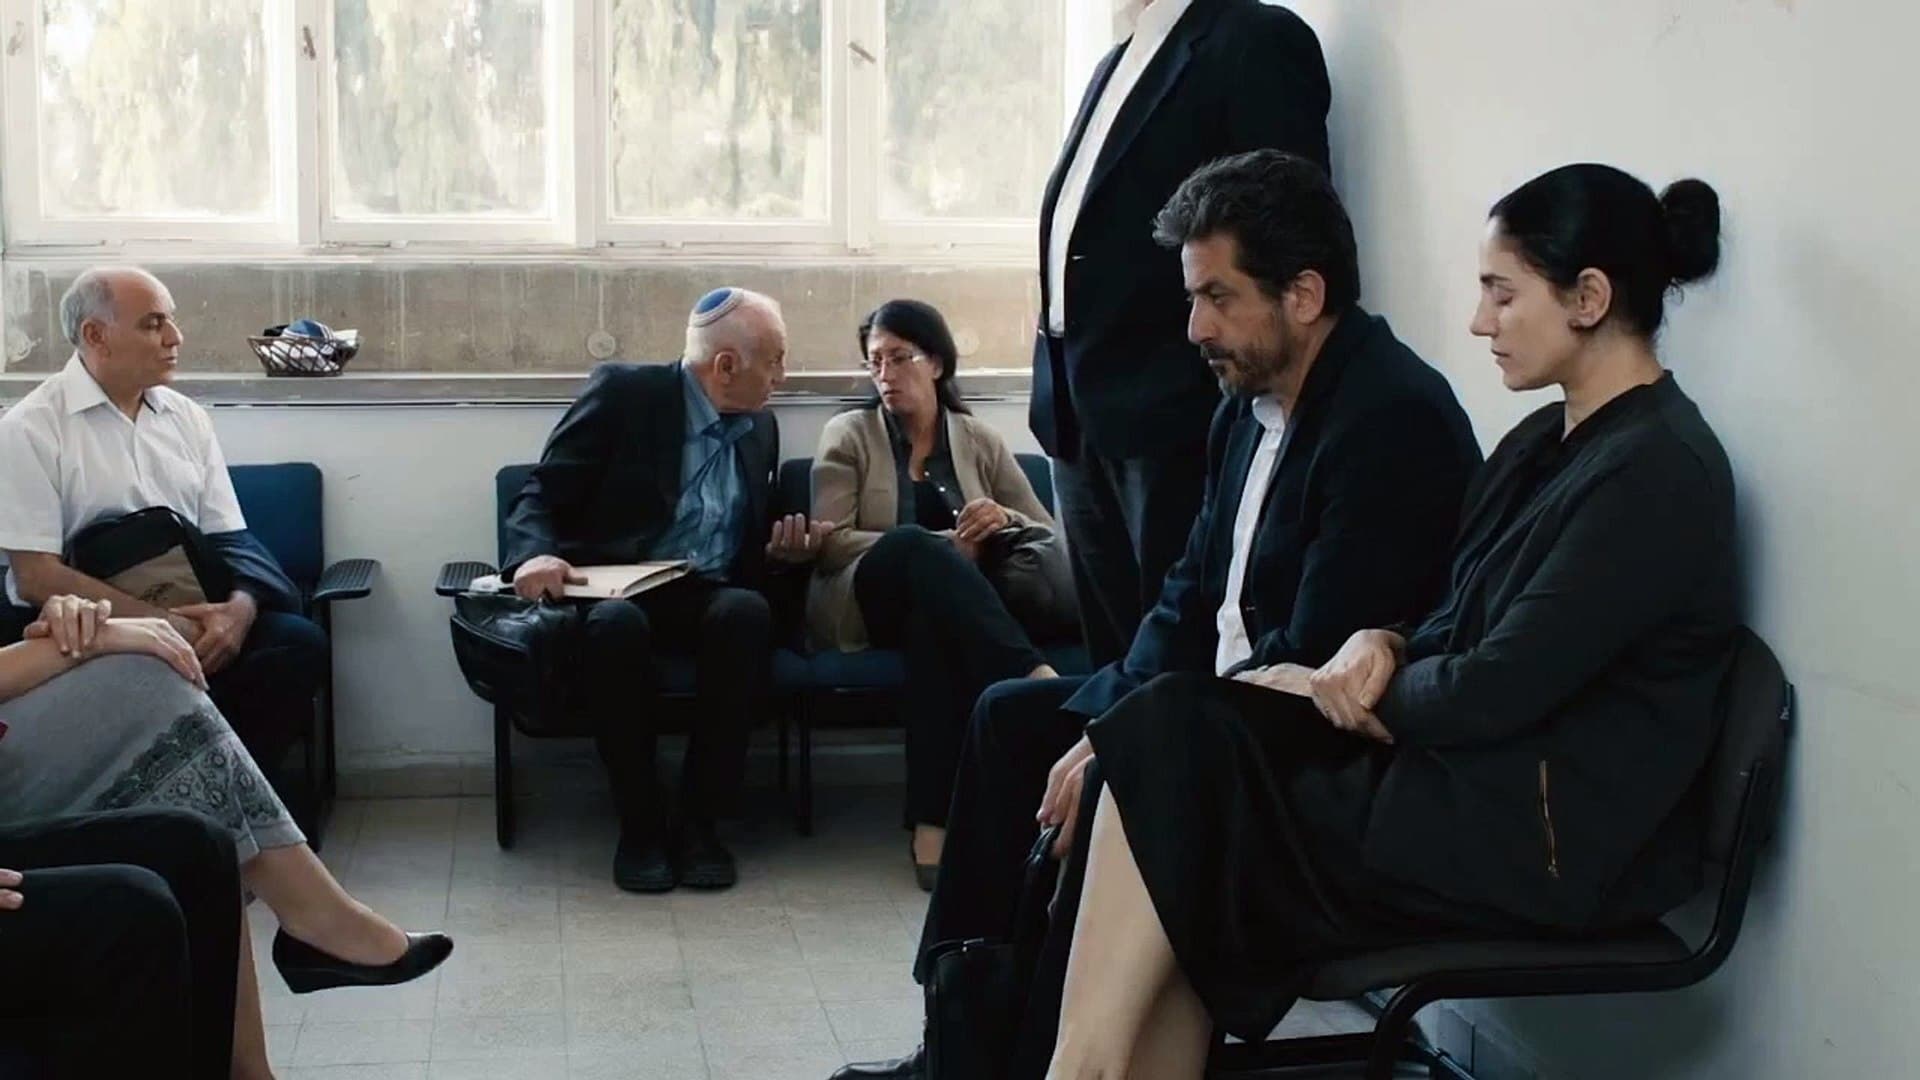 Gett: The Trial of Viviane Amsalem 2014 123movies